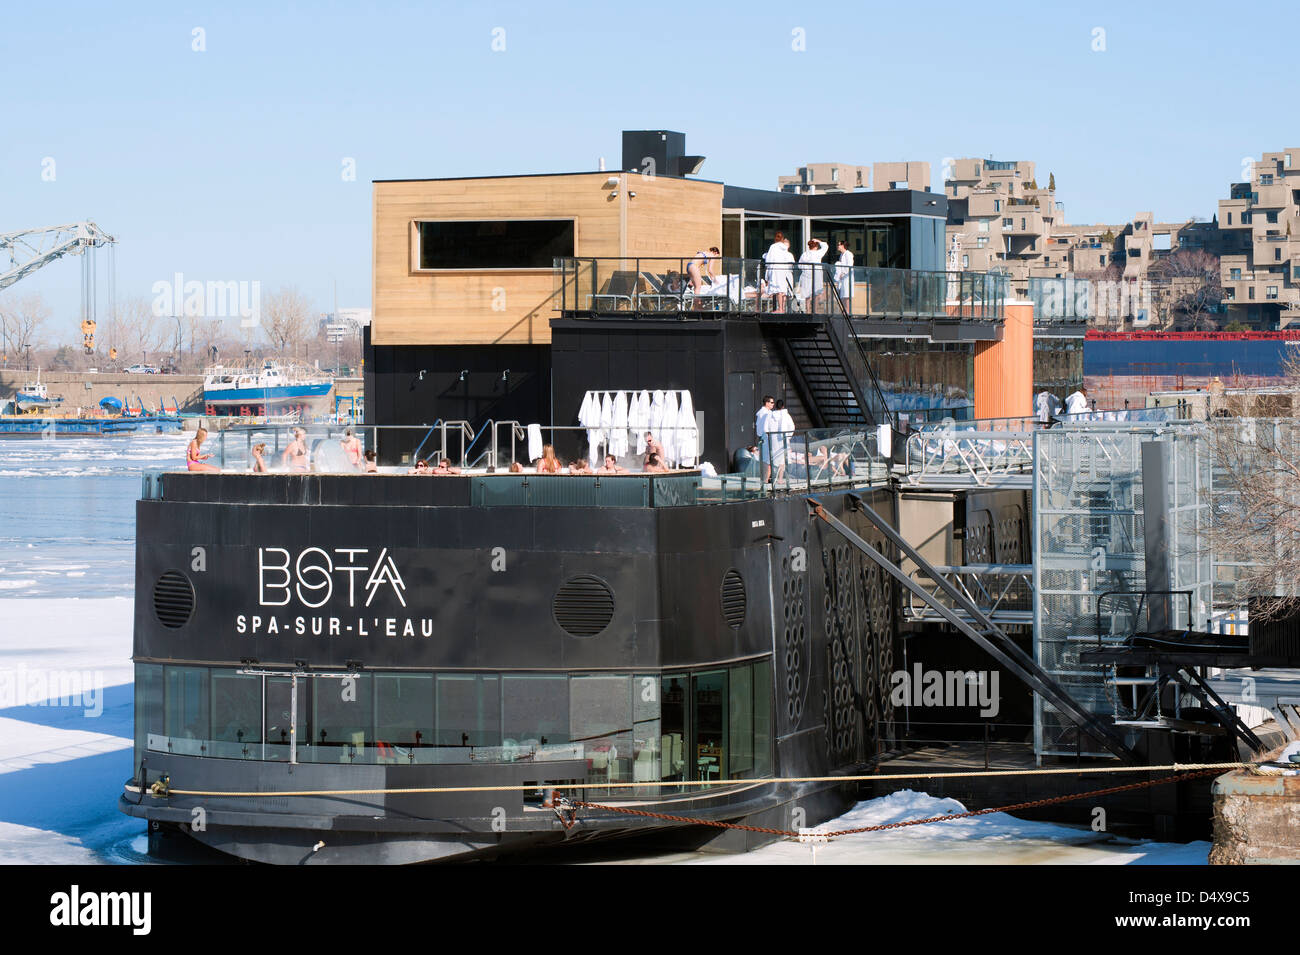 Bota Bota spa flottant, Vieux-Port de Montréal, province de Québec, Canada. Banque D'Images